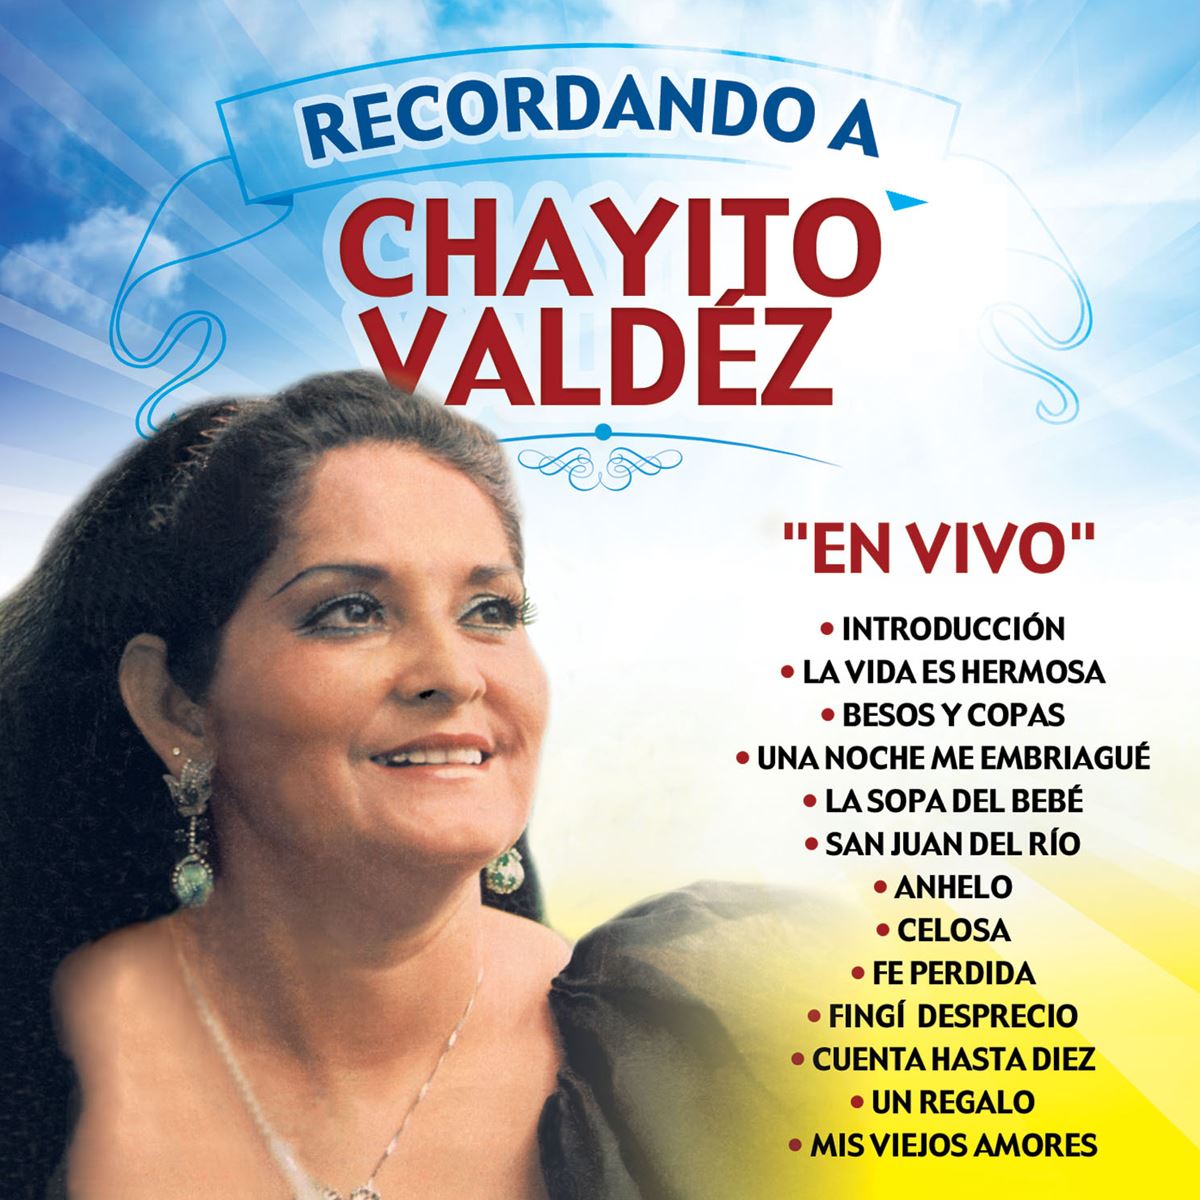 Recordando A Chayito Valdez "En Vivo"